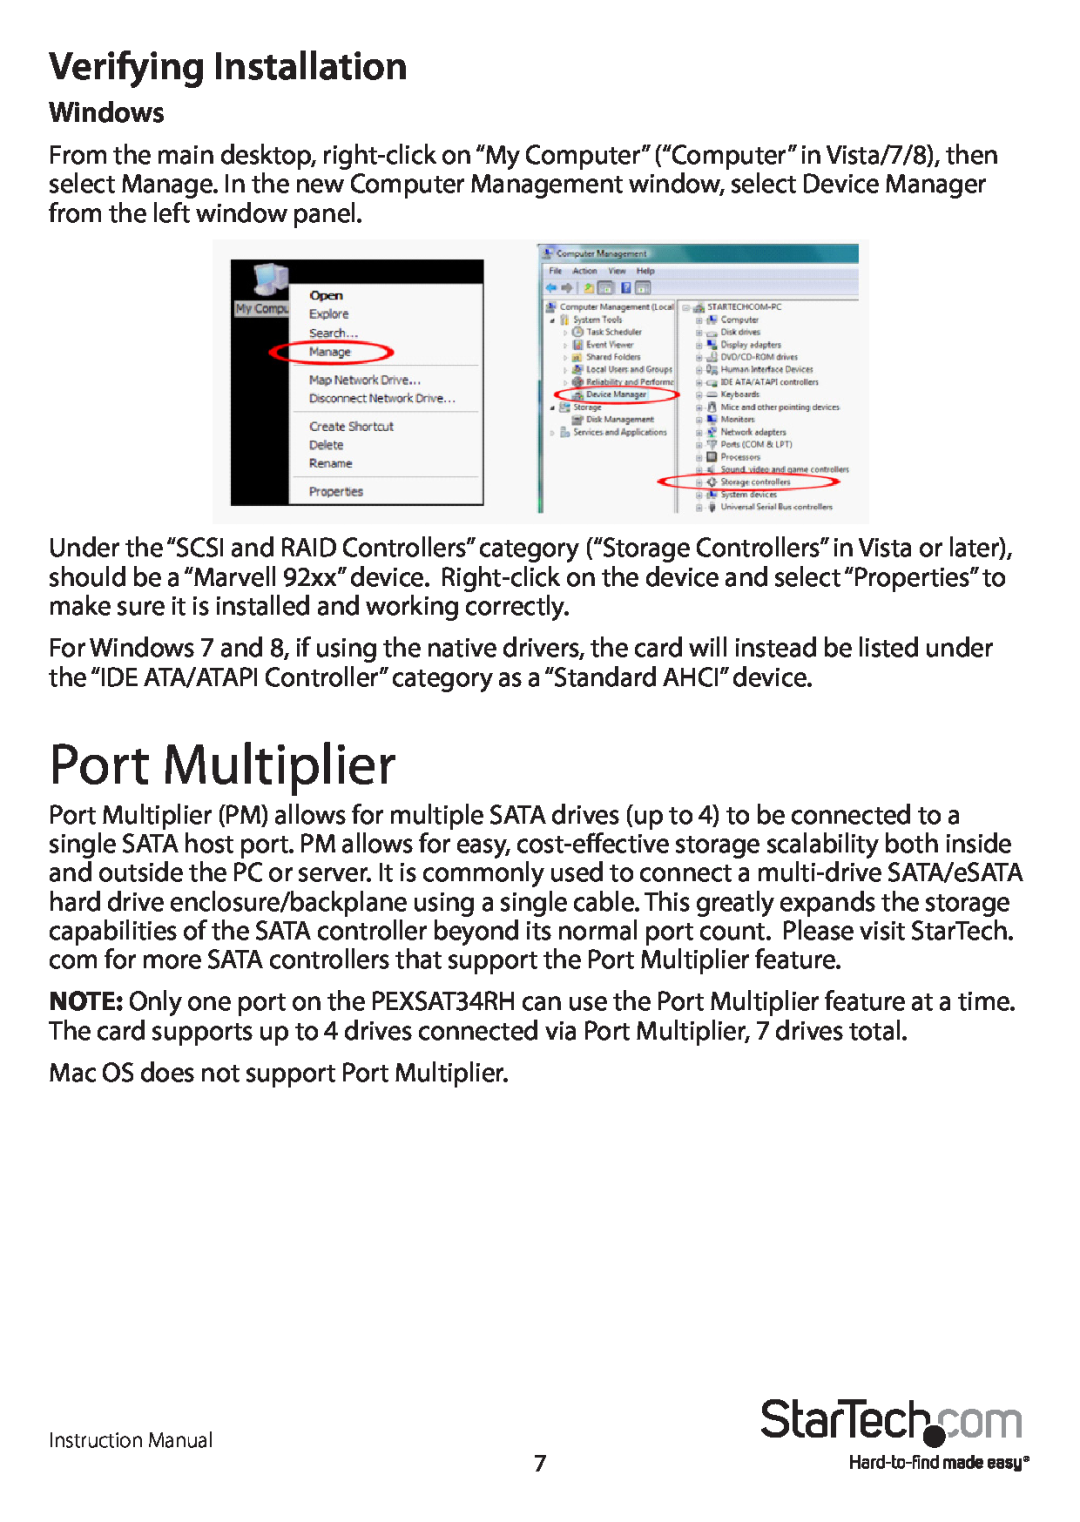 StarTech.com PEXSAT34RH manual Port Multiplier, Verifying Installation, Windows 